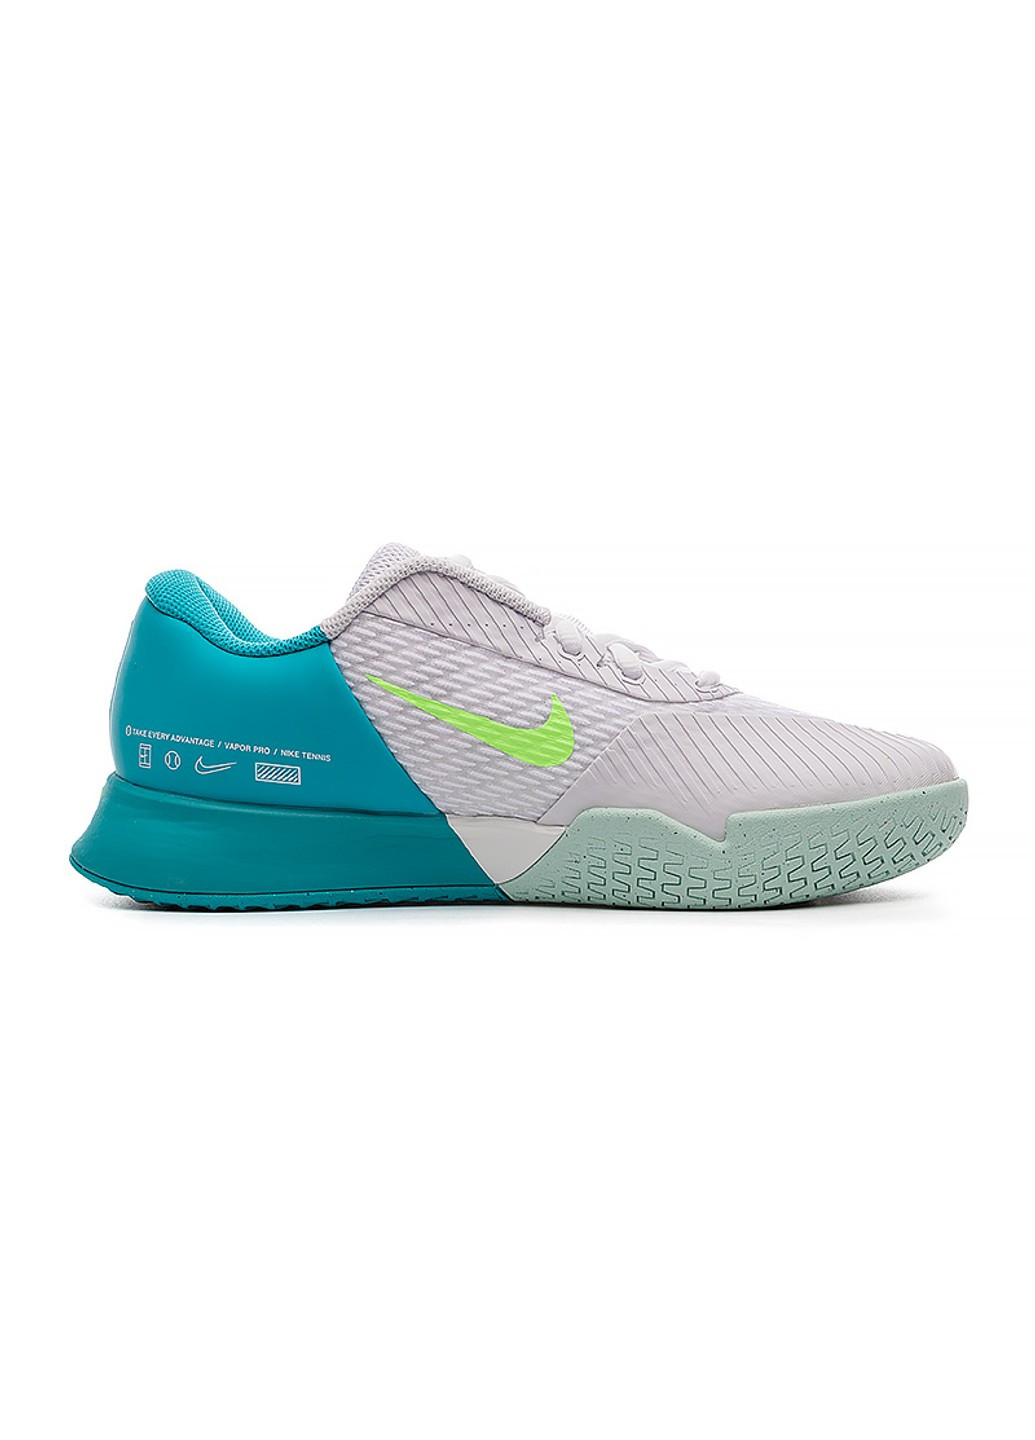 Цветные всесезонные кроссовки zoom vapor pro 2 hc Nike